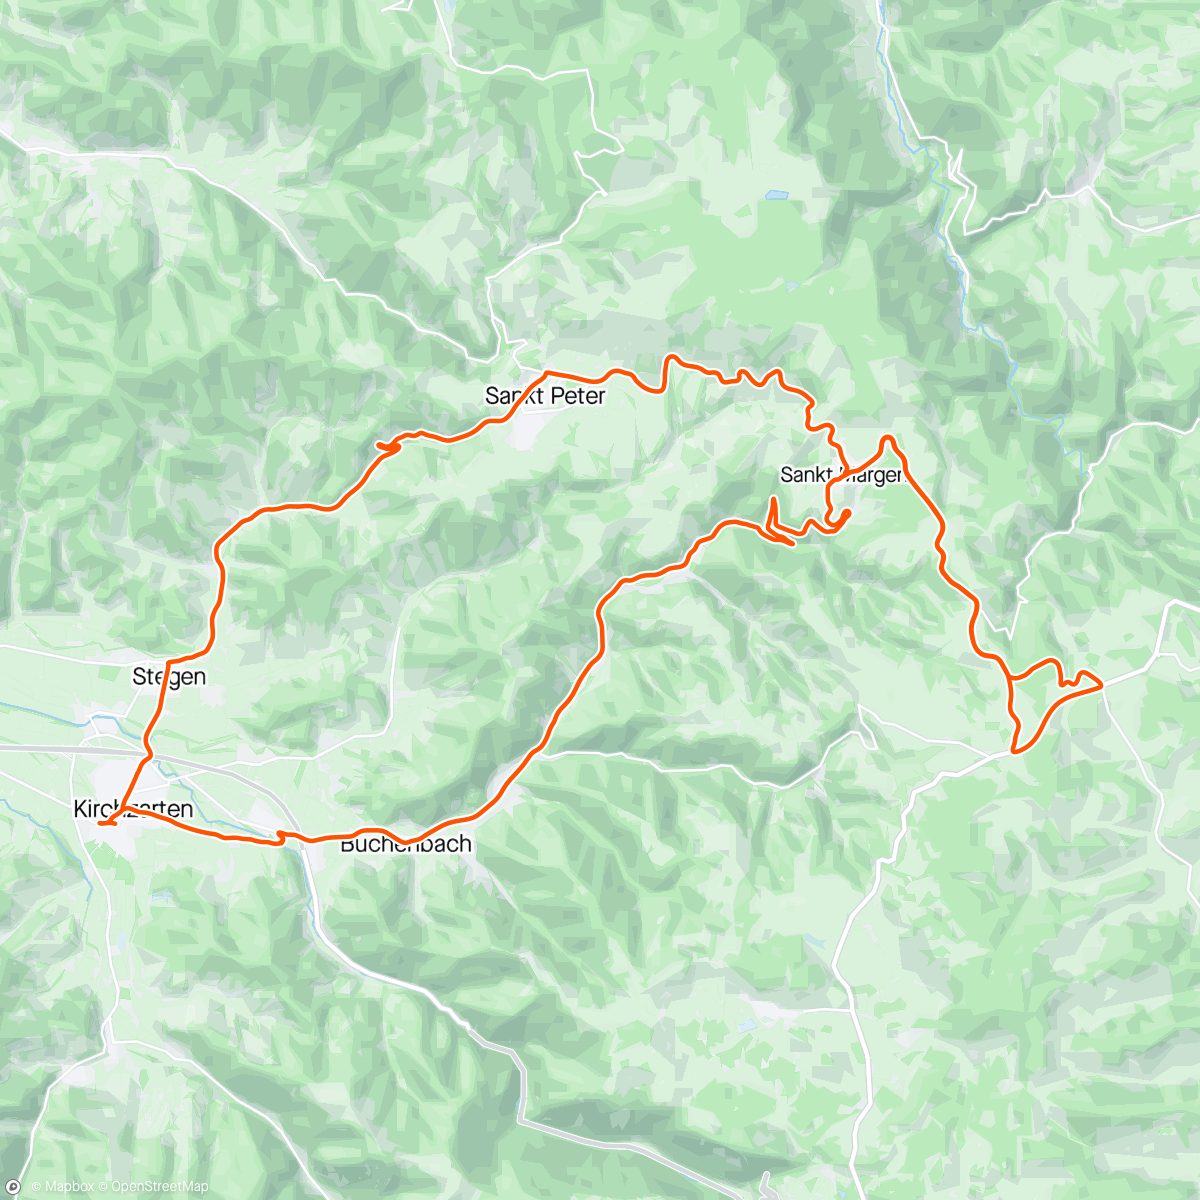 アクティビティ「Fahrt am Vatertag」の地図